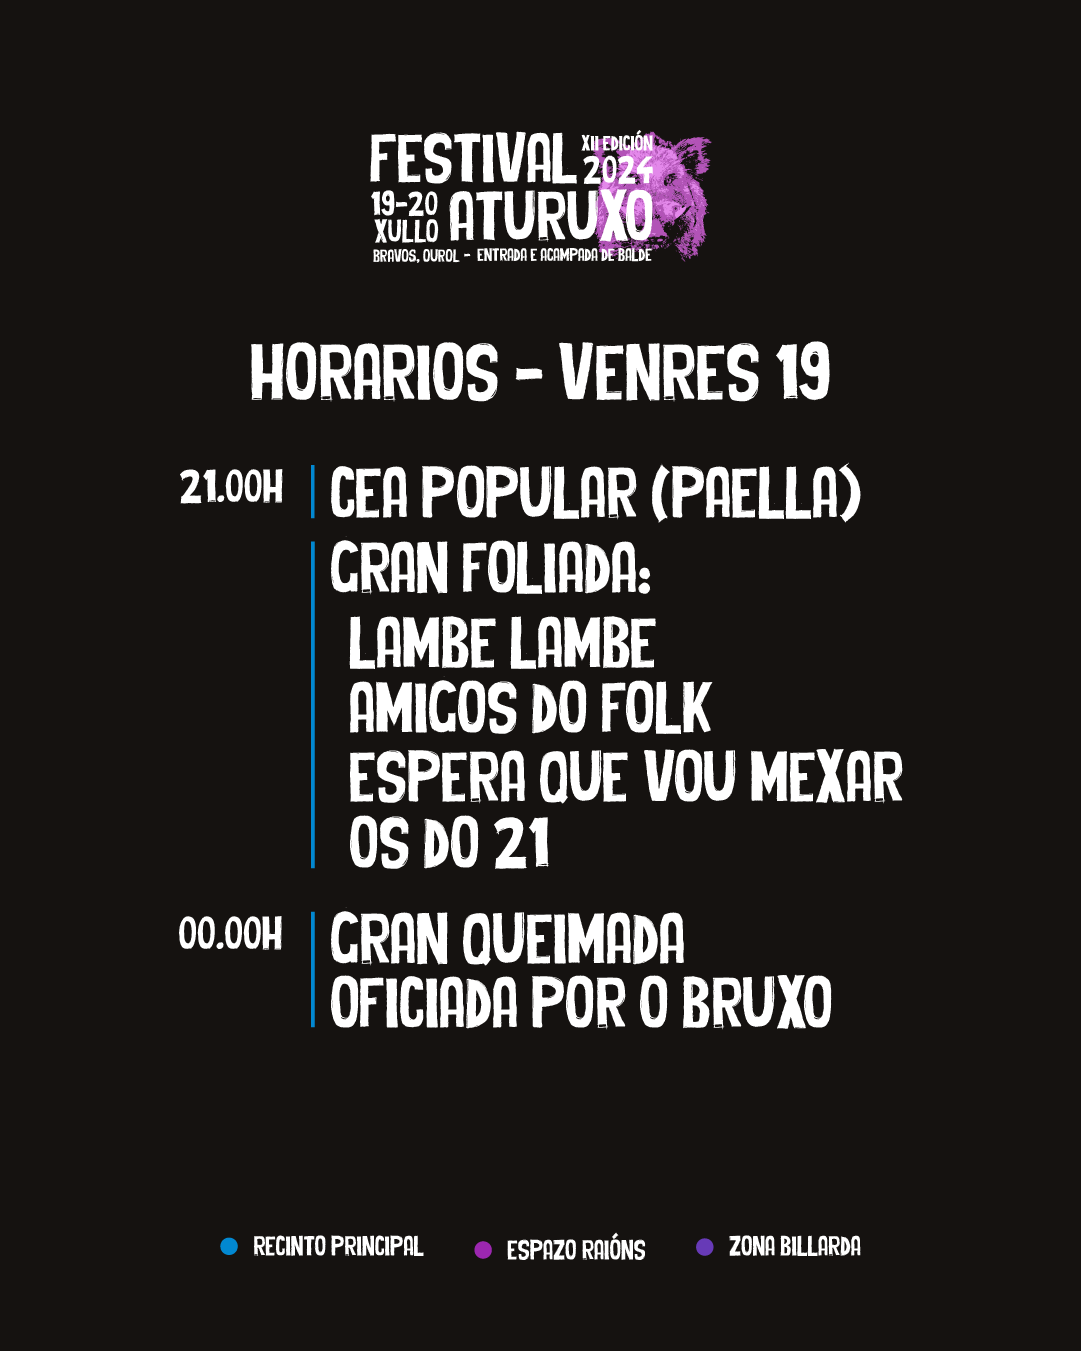 Horarios Venres 19 - Festival Aturuxo 2024 - XII Edición